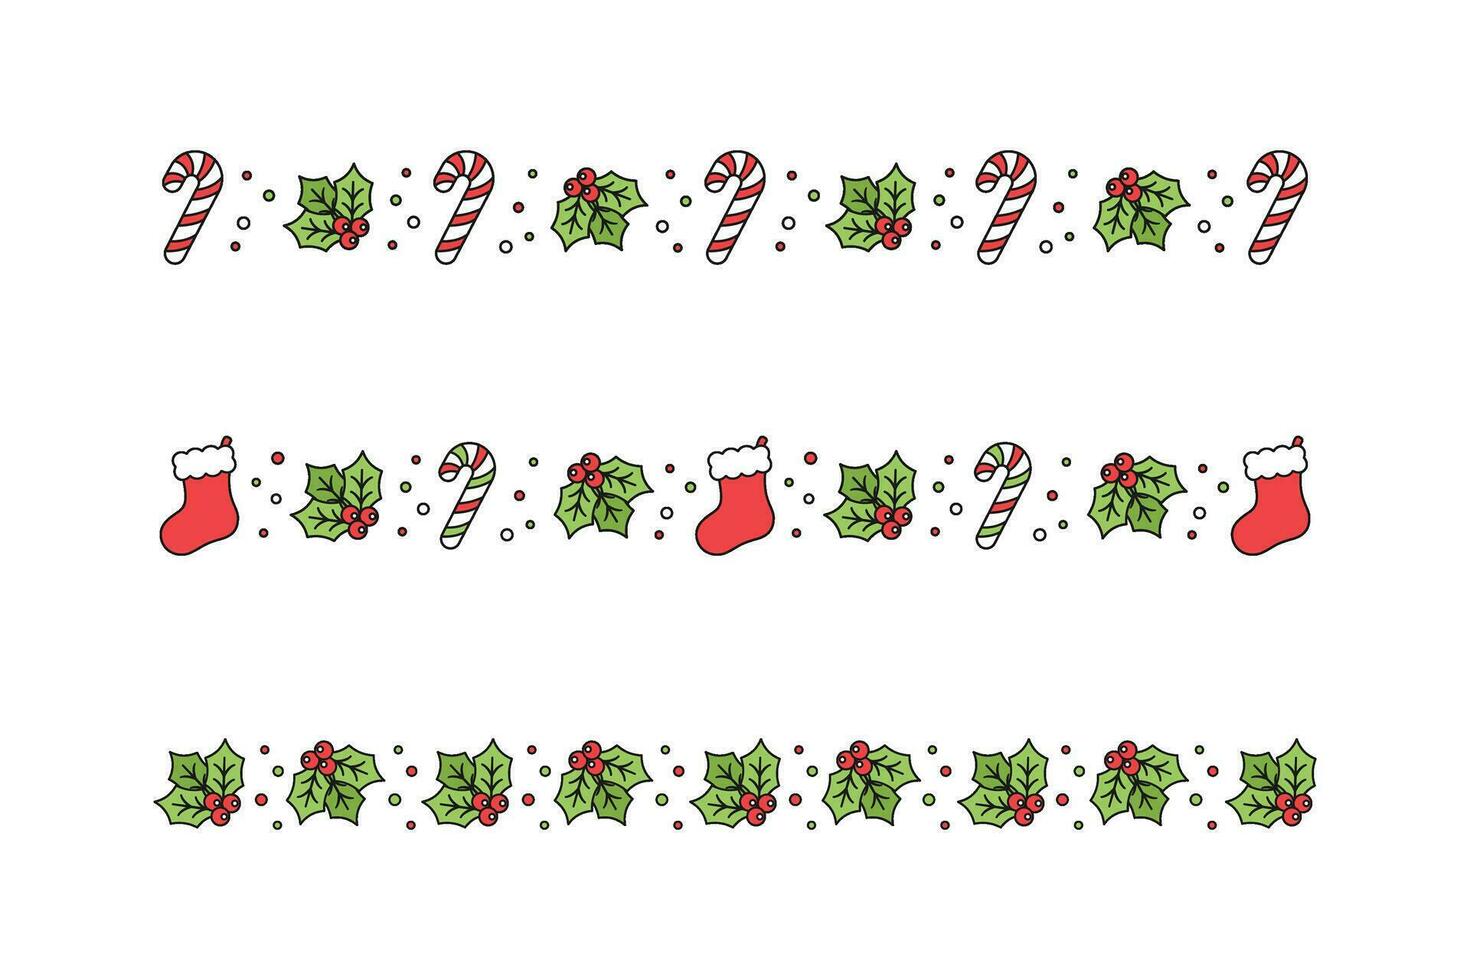 Noël à thème décoratif frontière et texte diviseur ensemble, Noël stockage, bonbons canne et du gui modèle. vecteur illustration.